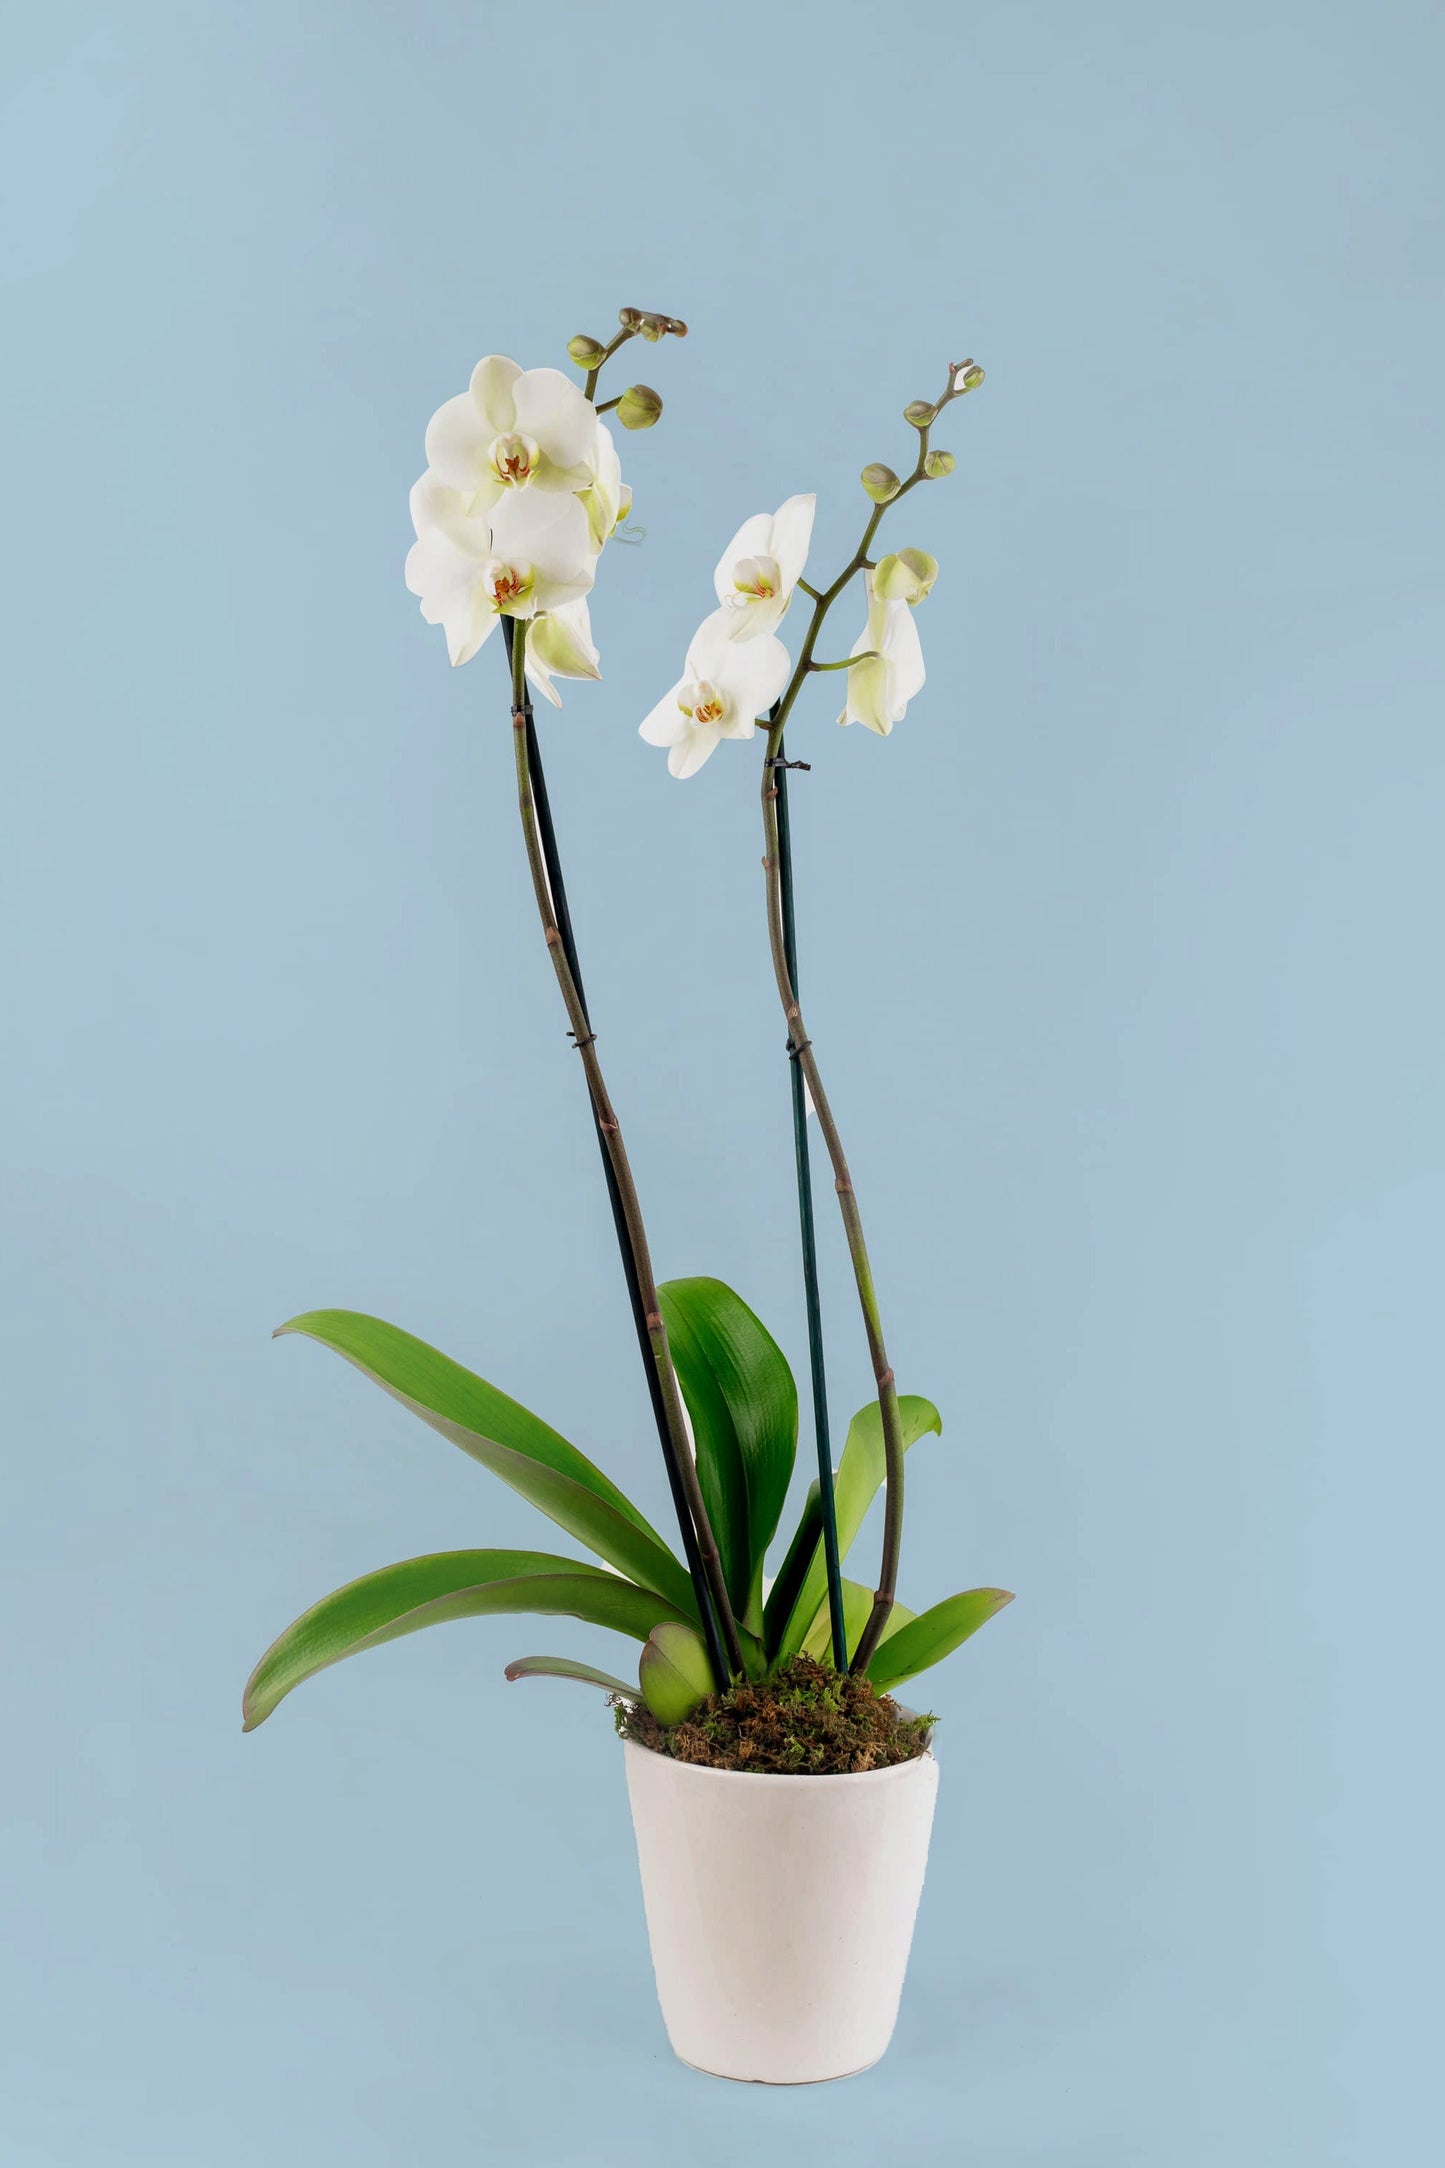 Remedios Varo Blanco Planta // Orquídea Blanca